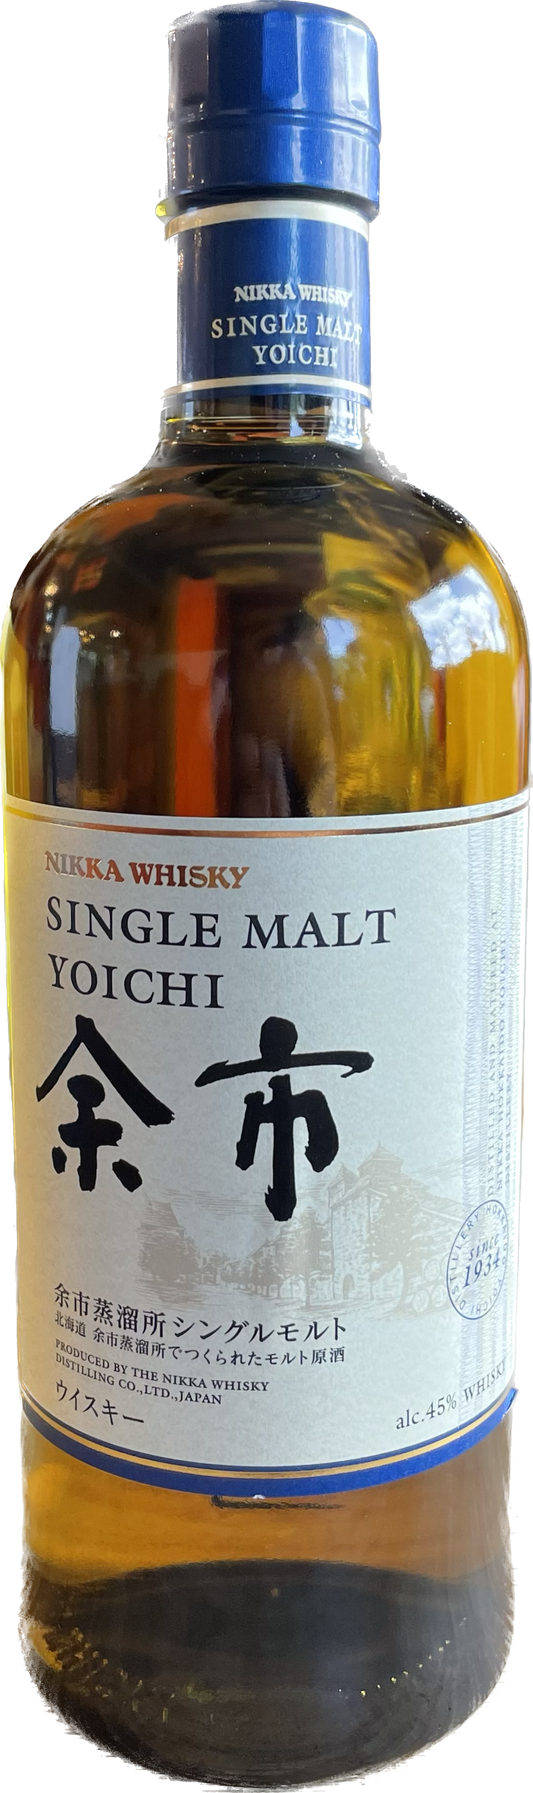 Yoichi Nikka Whisky